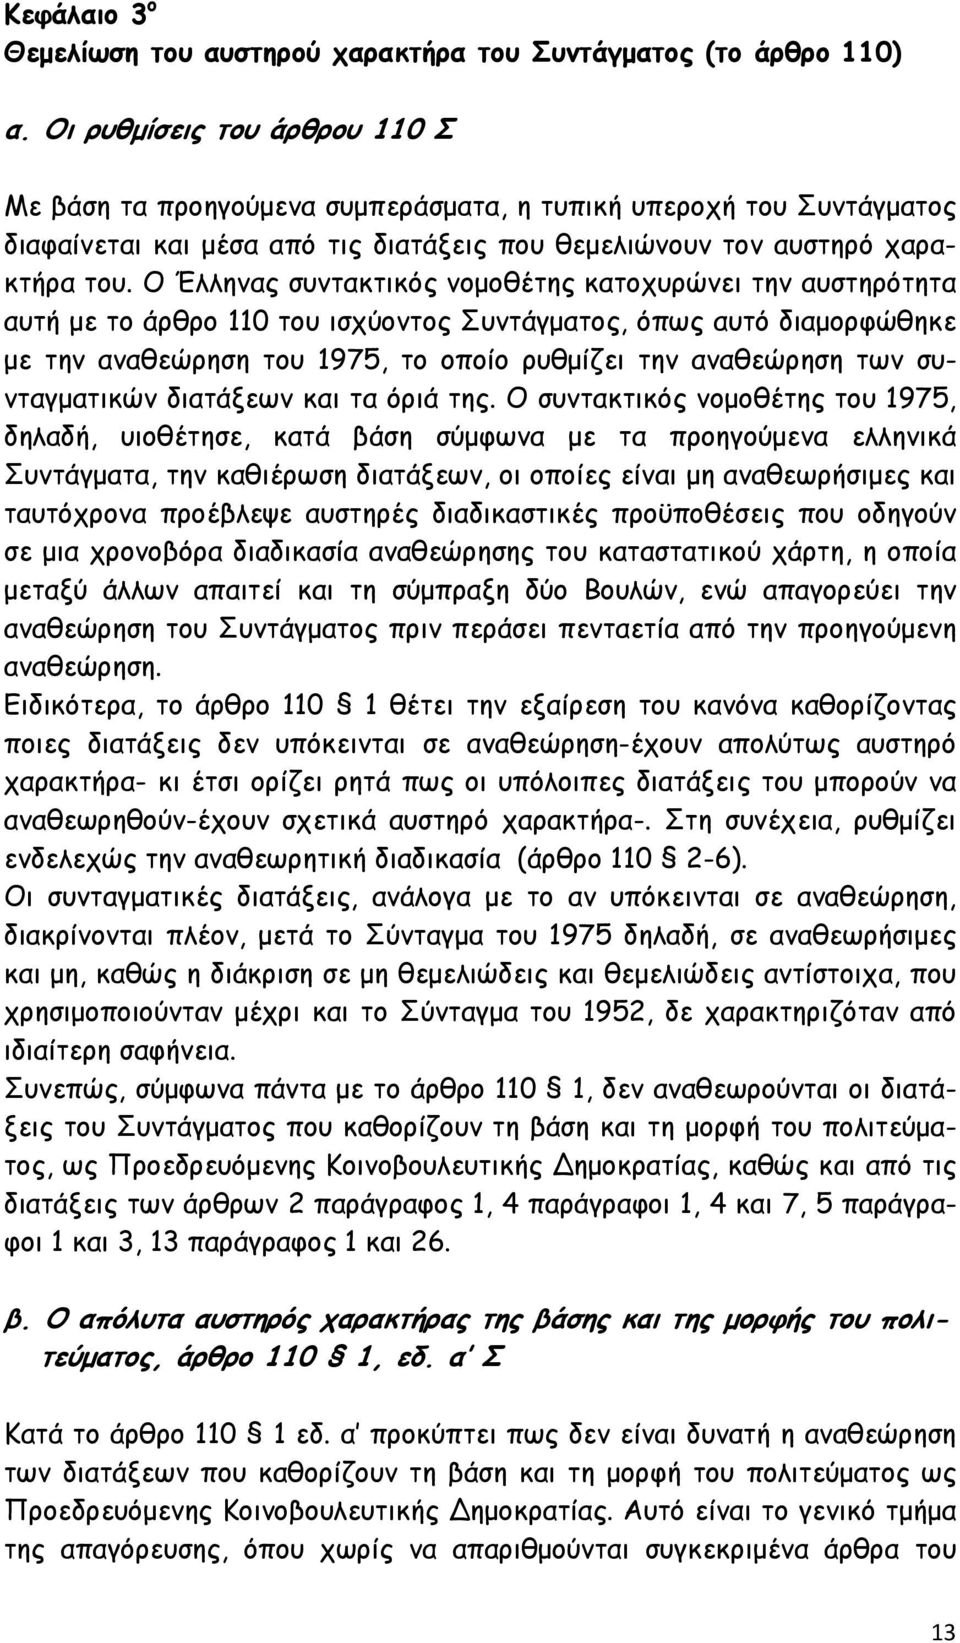 Ο Έλληνας συντακτικός νοµοθέτης κατοχυρώνει την αυστηρότητα αυτή µε το άρθρο 110 του ισχύοντος Συντάγµατος, όπως αυτό διαµορφώθηκε µε την αναθεώρηση του 1975, το οποίο ρυθµίζει την αναθεώρηση των